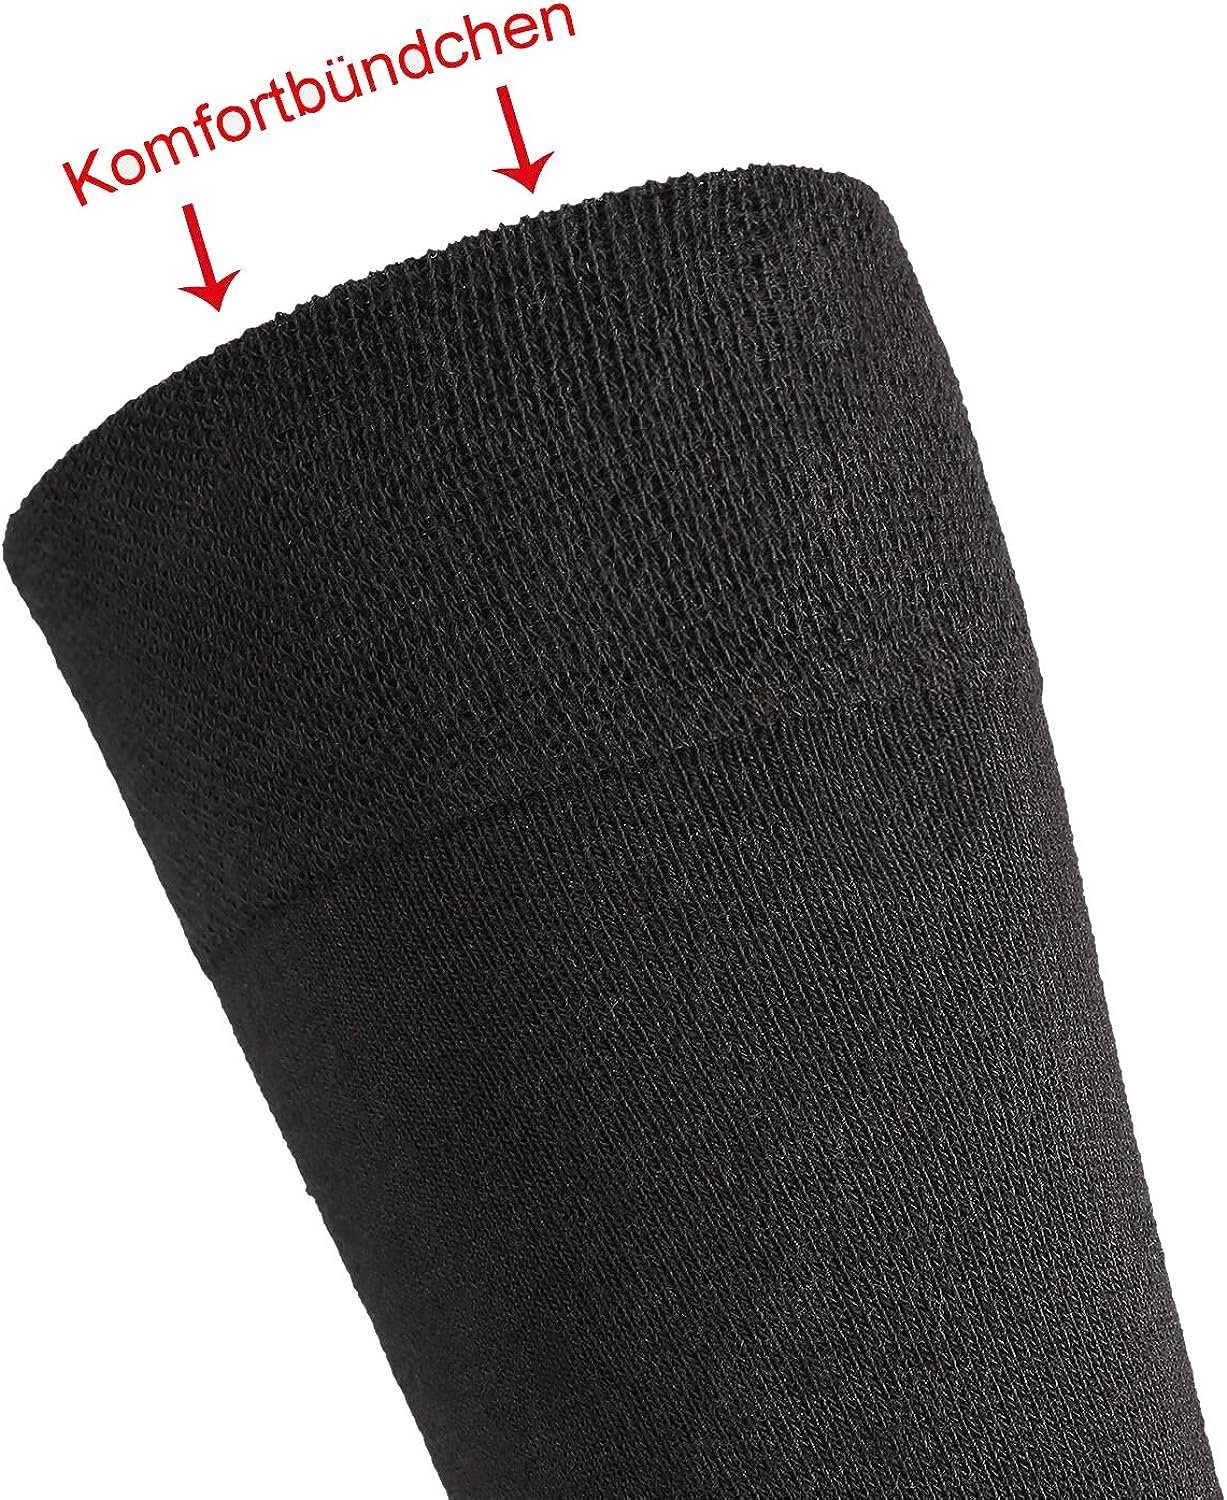 aus Natur Wellness-Socken mit Paar Bio-Baumwolle TippTexx 24 6 Anti-Loch-Garantie Socken